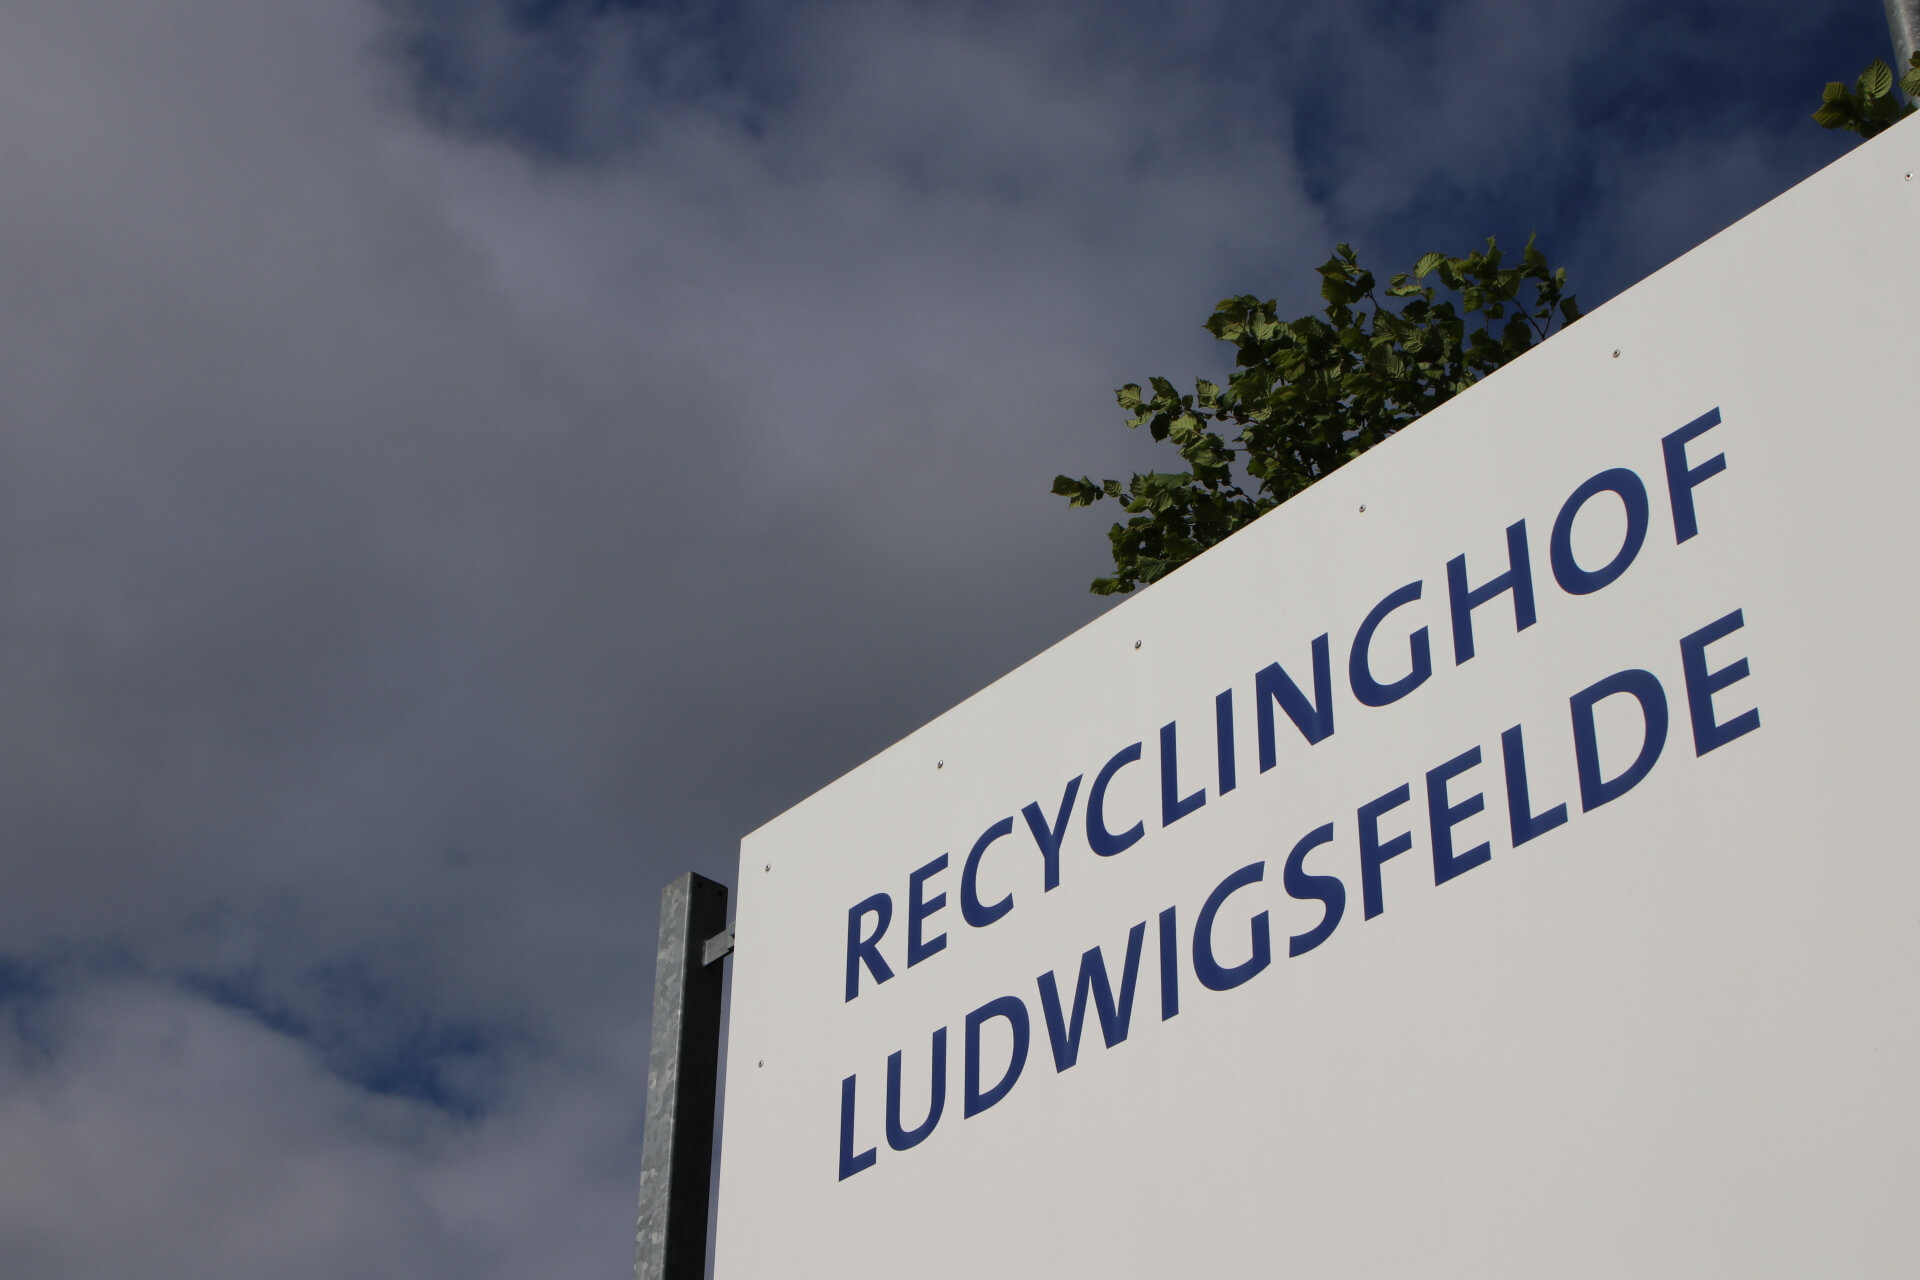 Recyclinghof Ludwigsfelde SBAZV